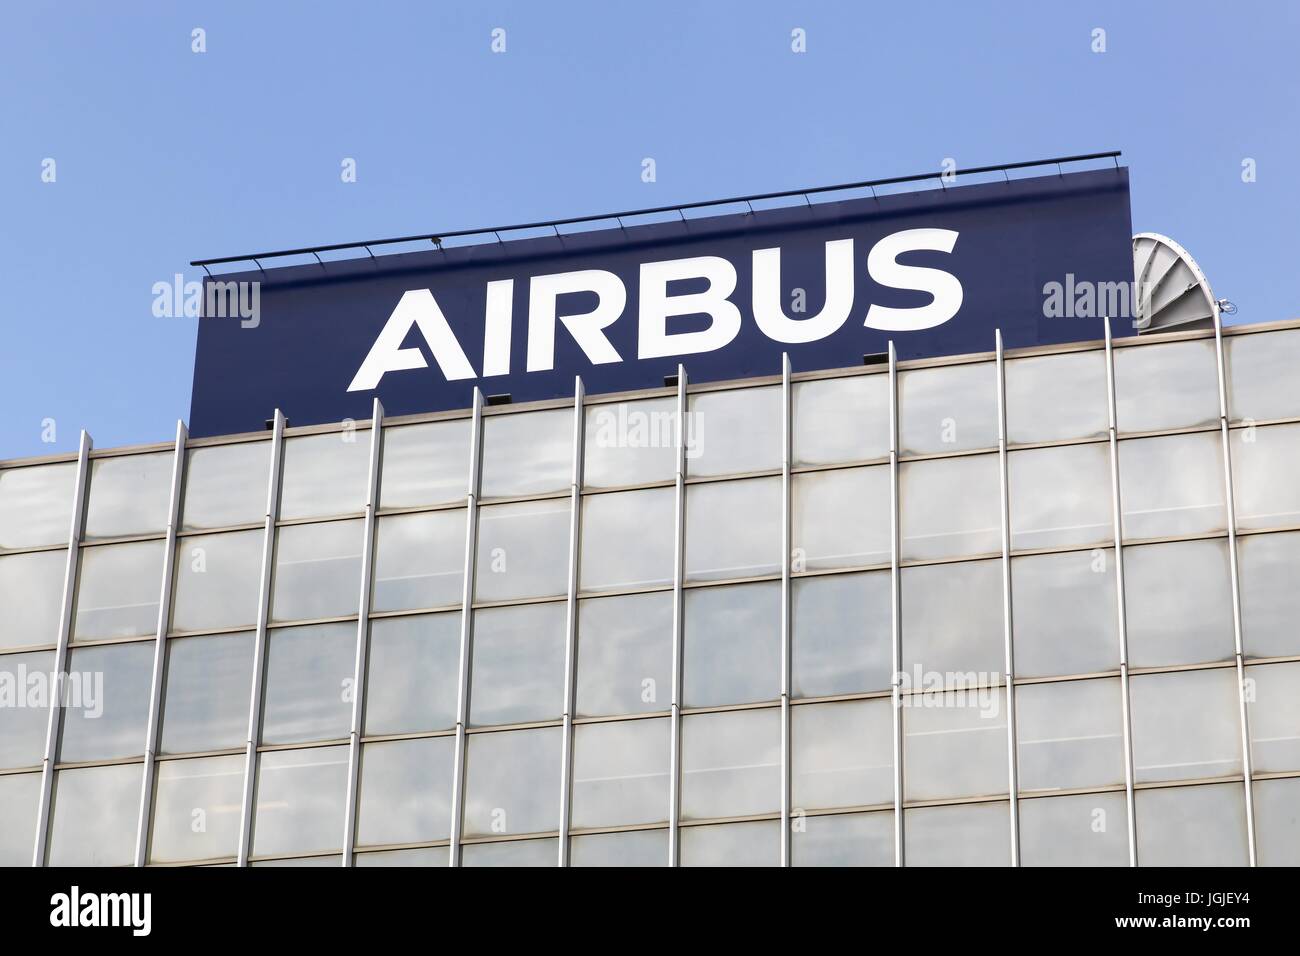 Toulouse, Francia - 2 de junio, 2017: Airbus es una división de la multinacional Airbus se que fabrica aviones civiles Foto de stock